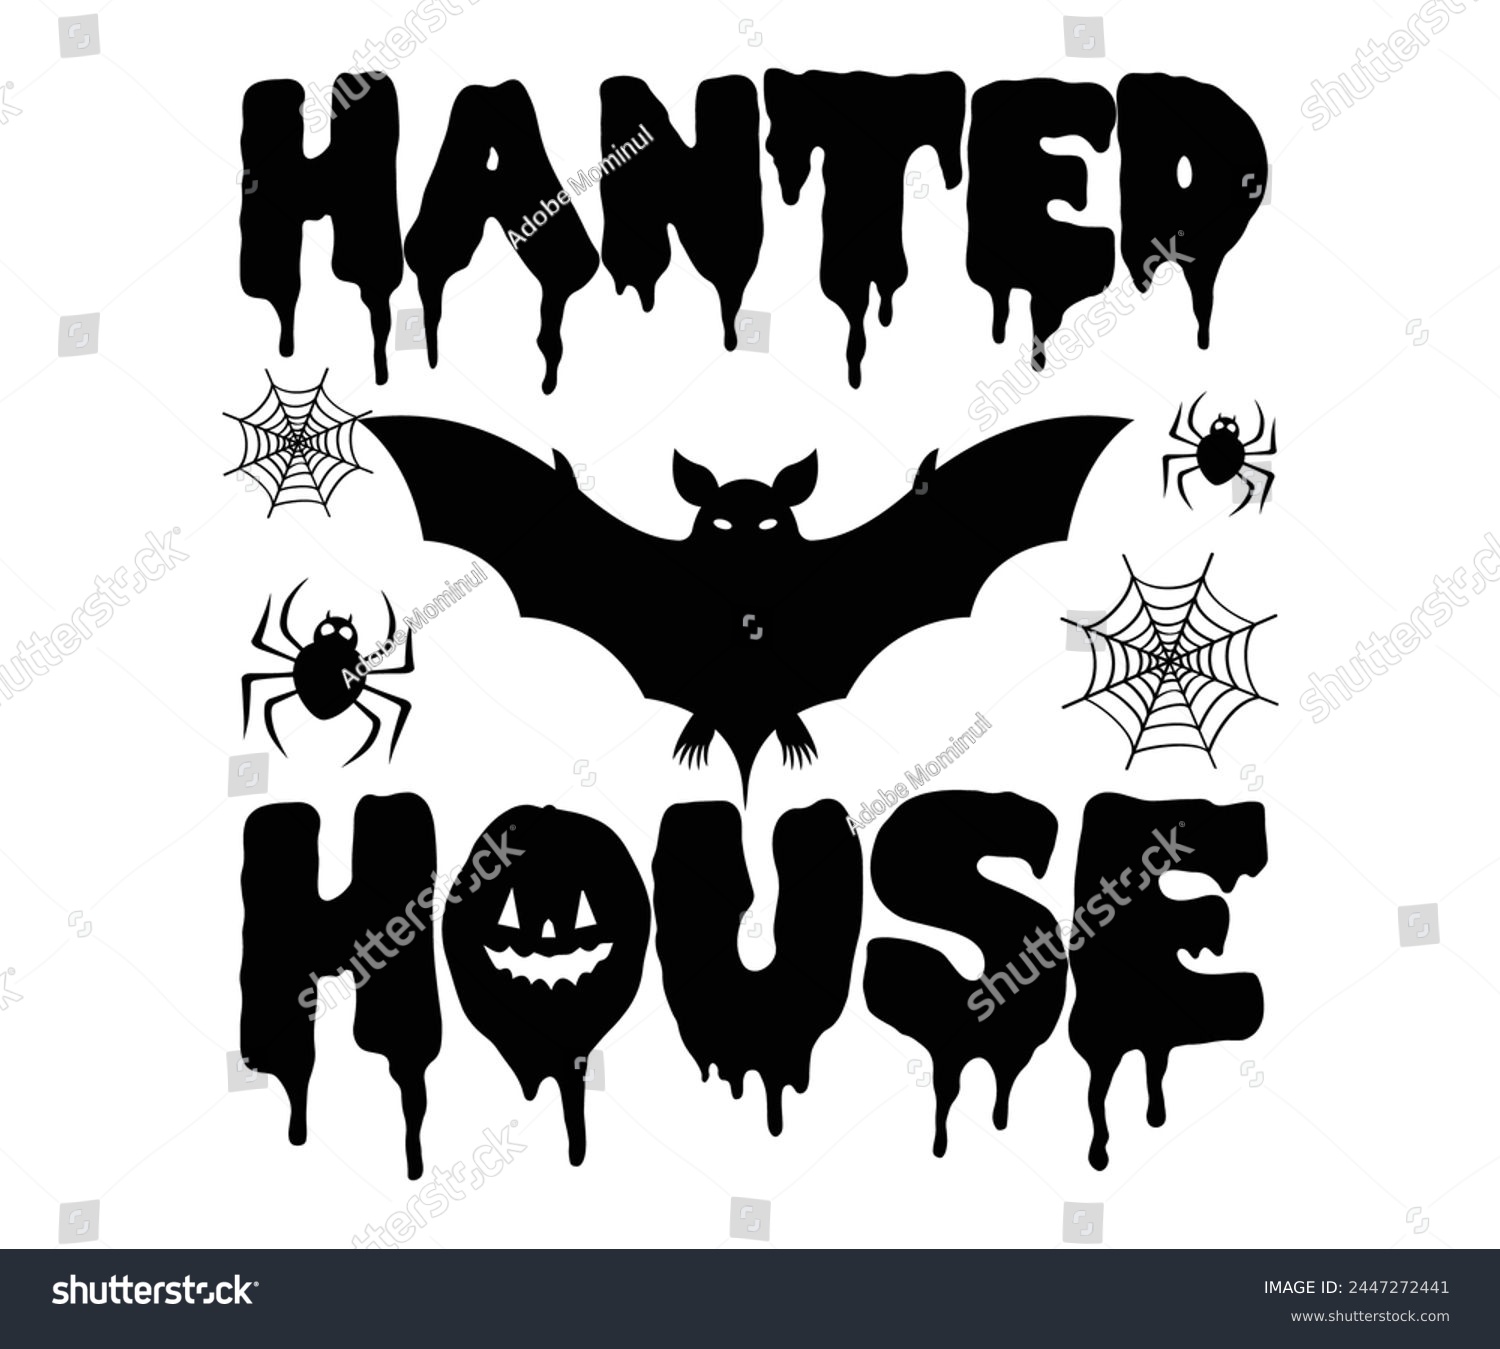 SVG of Hanted House Svg,Halloween Svg,Typography,Halloween Quotes,Witches Svg,Halloween Party,Halloween Costume,Halloween Gift,Funny Halloween,Spooky Svg,Funny T shirt,Ghost Svg,Cut file svg